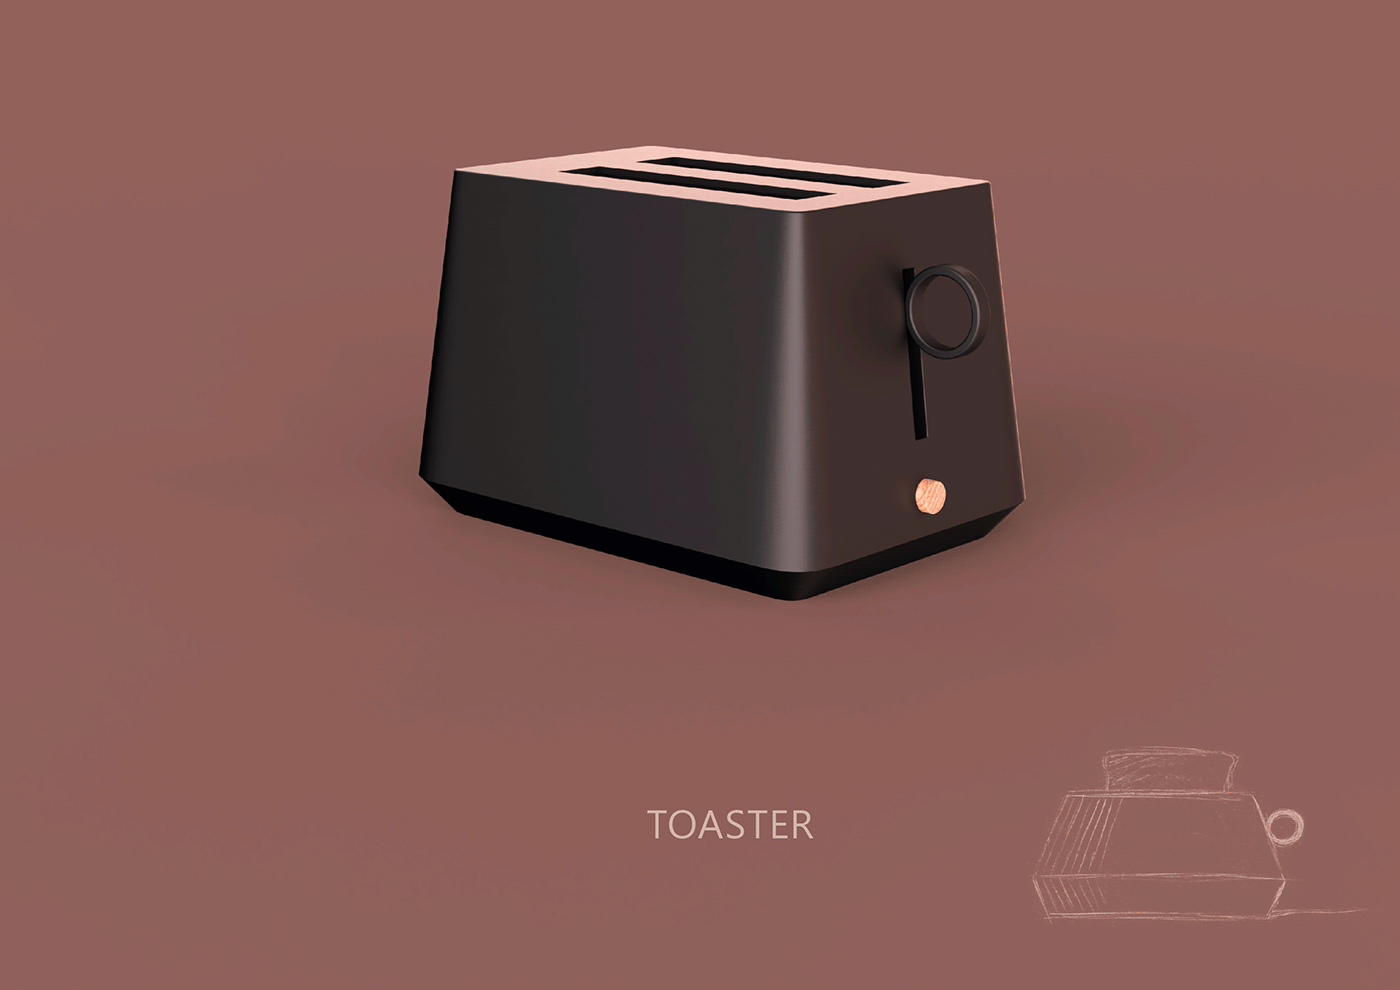 productdesign industrialdesign 3D Render keyshot Rhino kitchen toaster product design  3d modeling